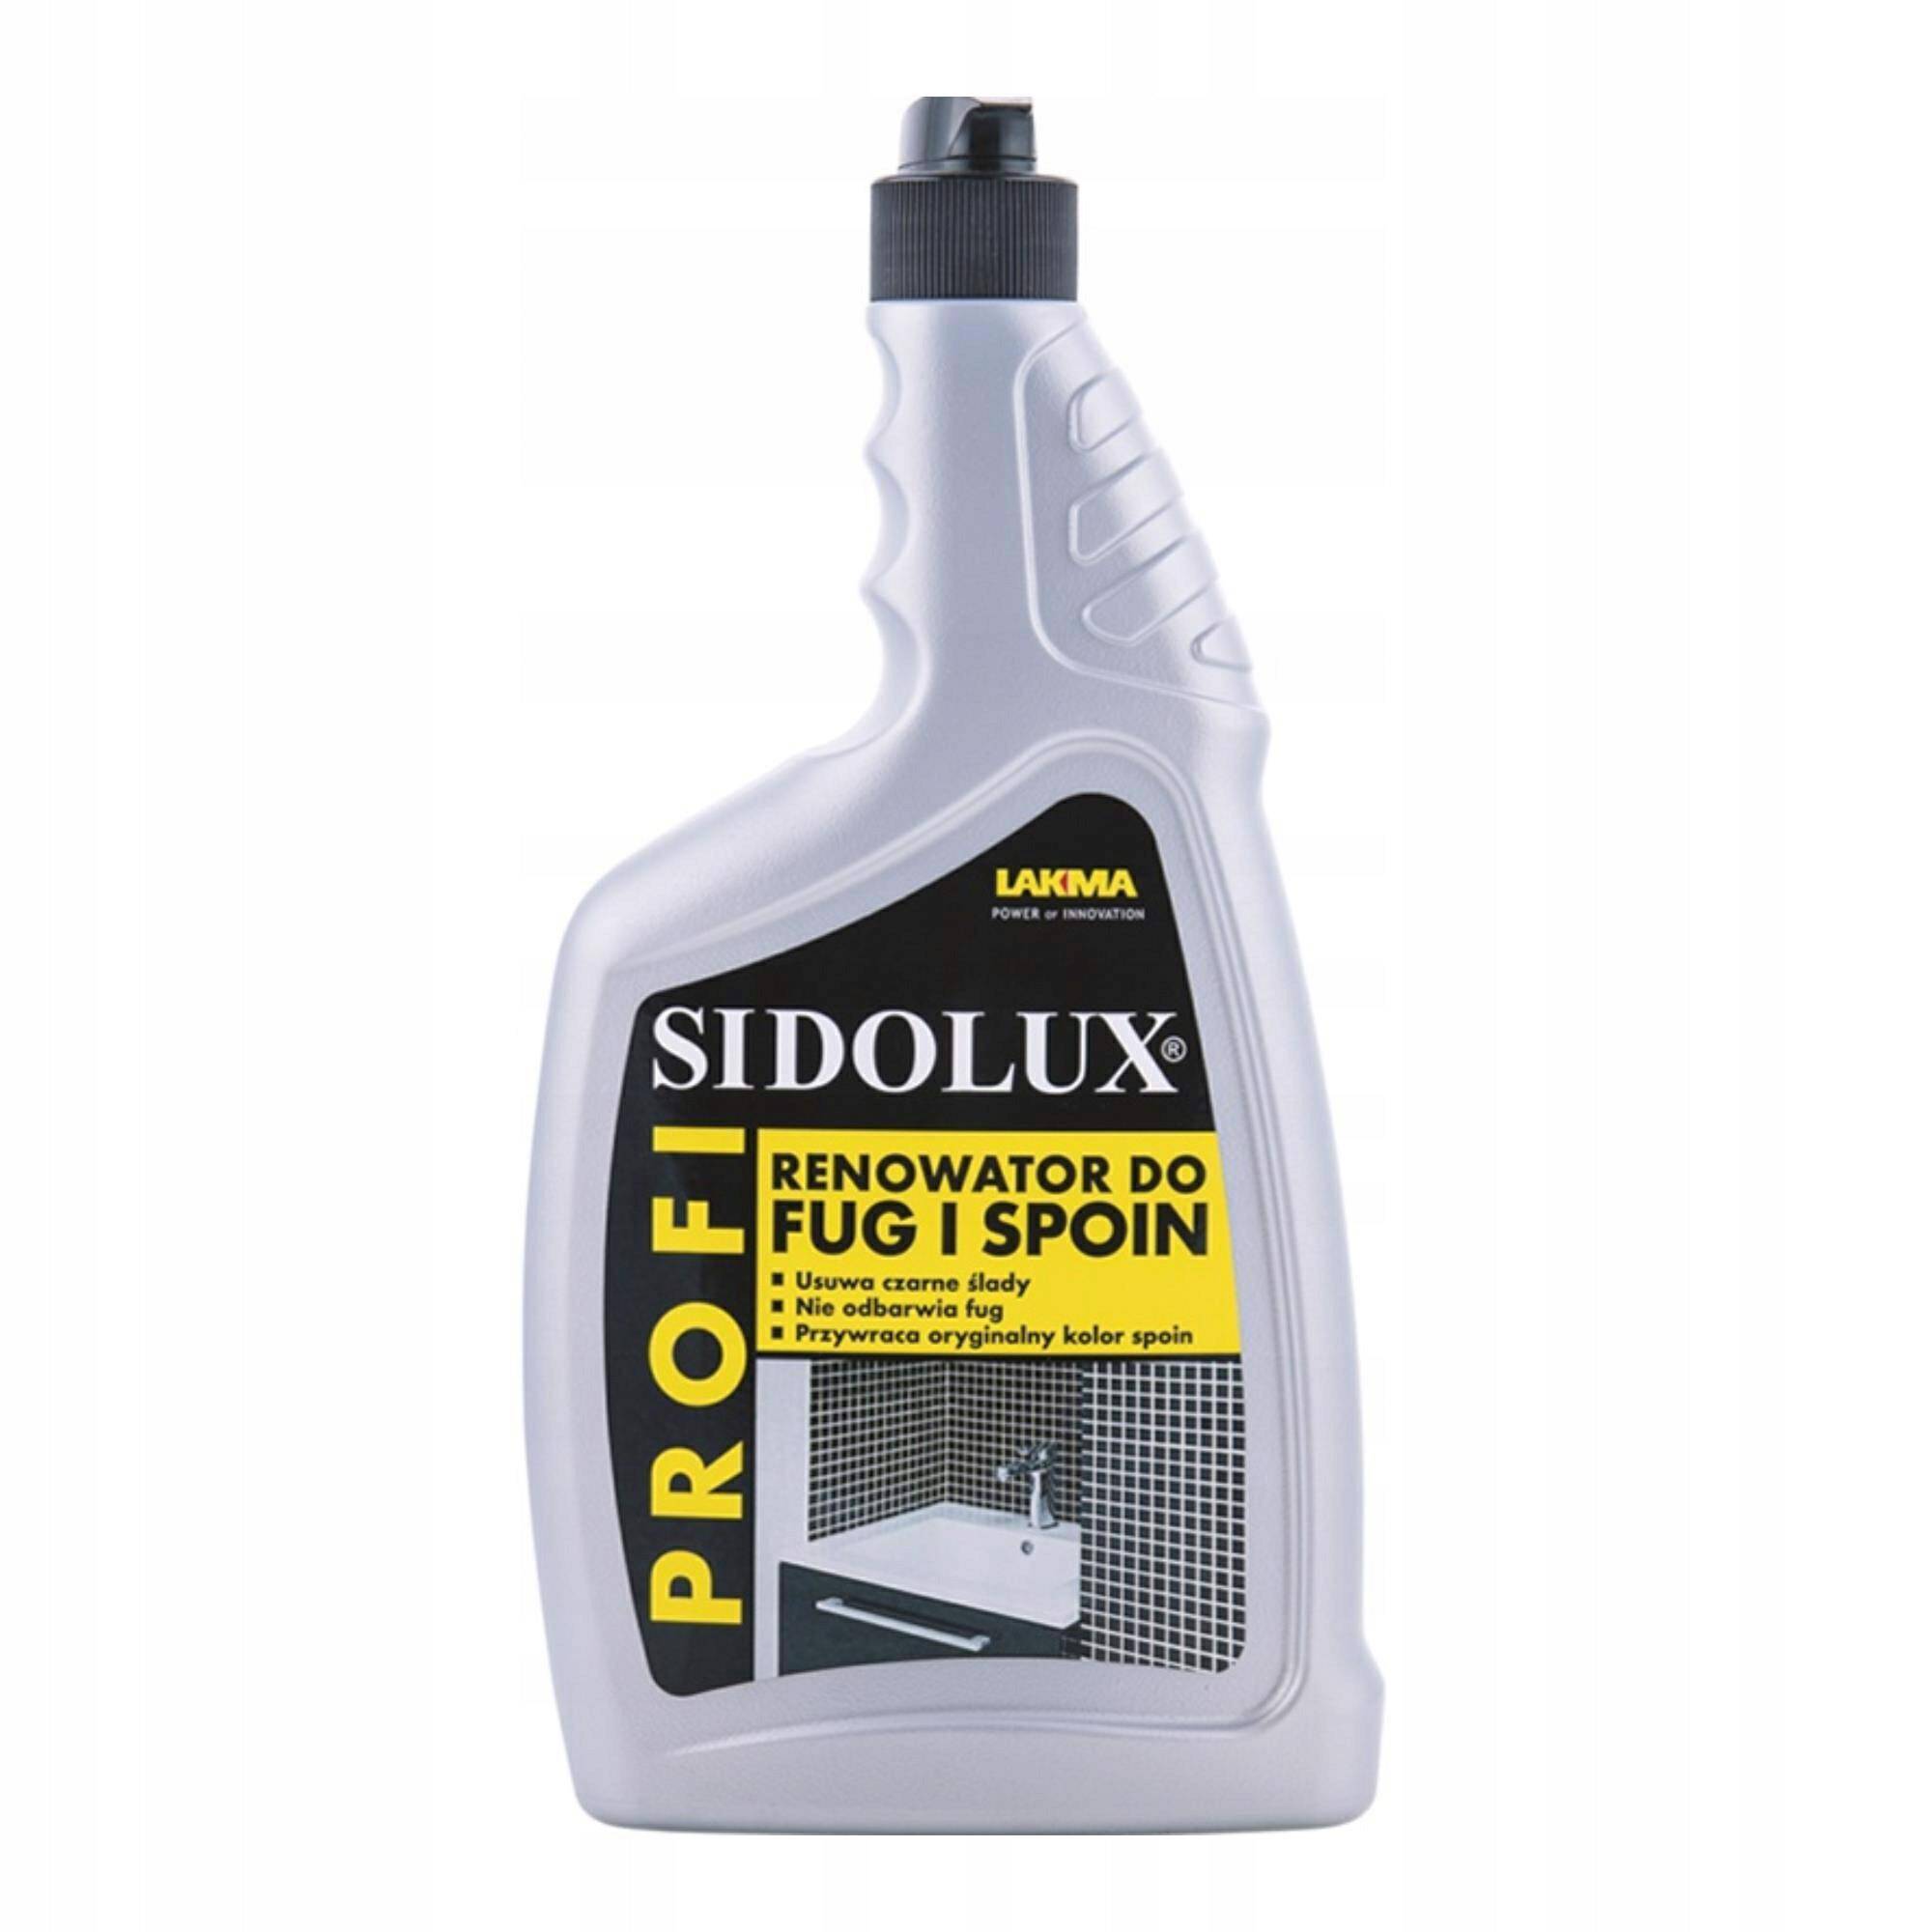 Sidolux PROFI renowator do fug i spoin to profesjonalny preparat do czyszczenia fug oraz spoin.